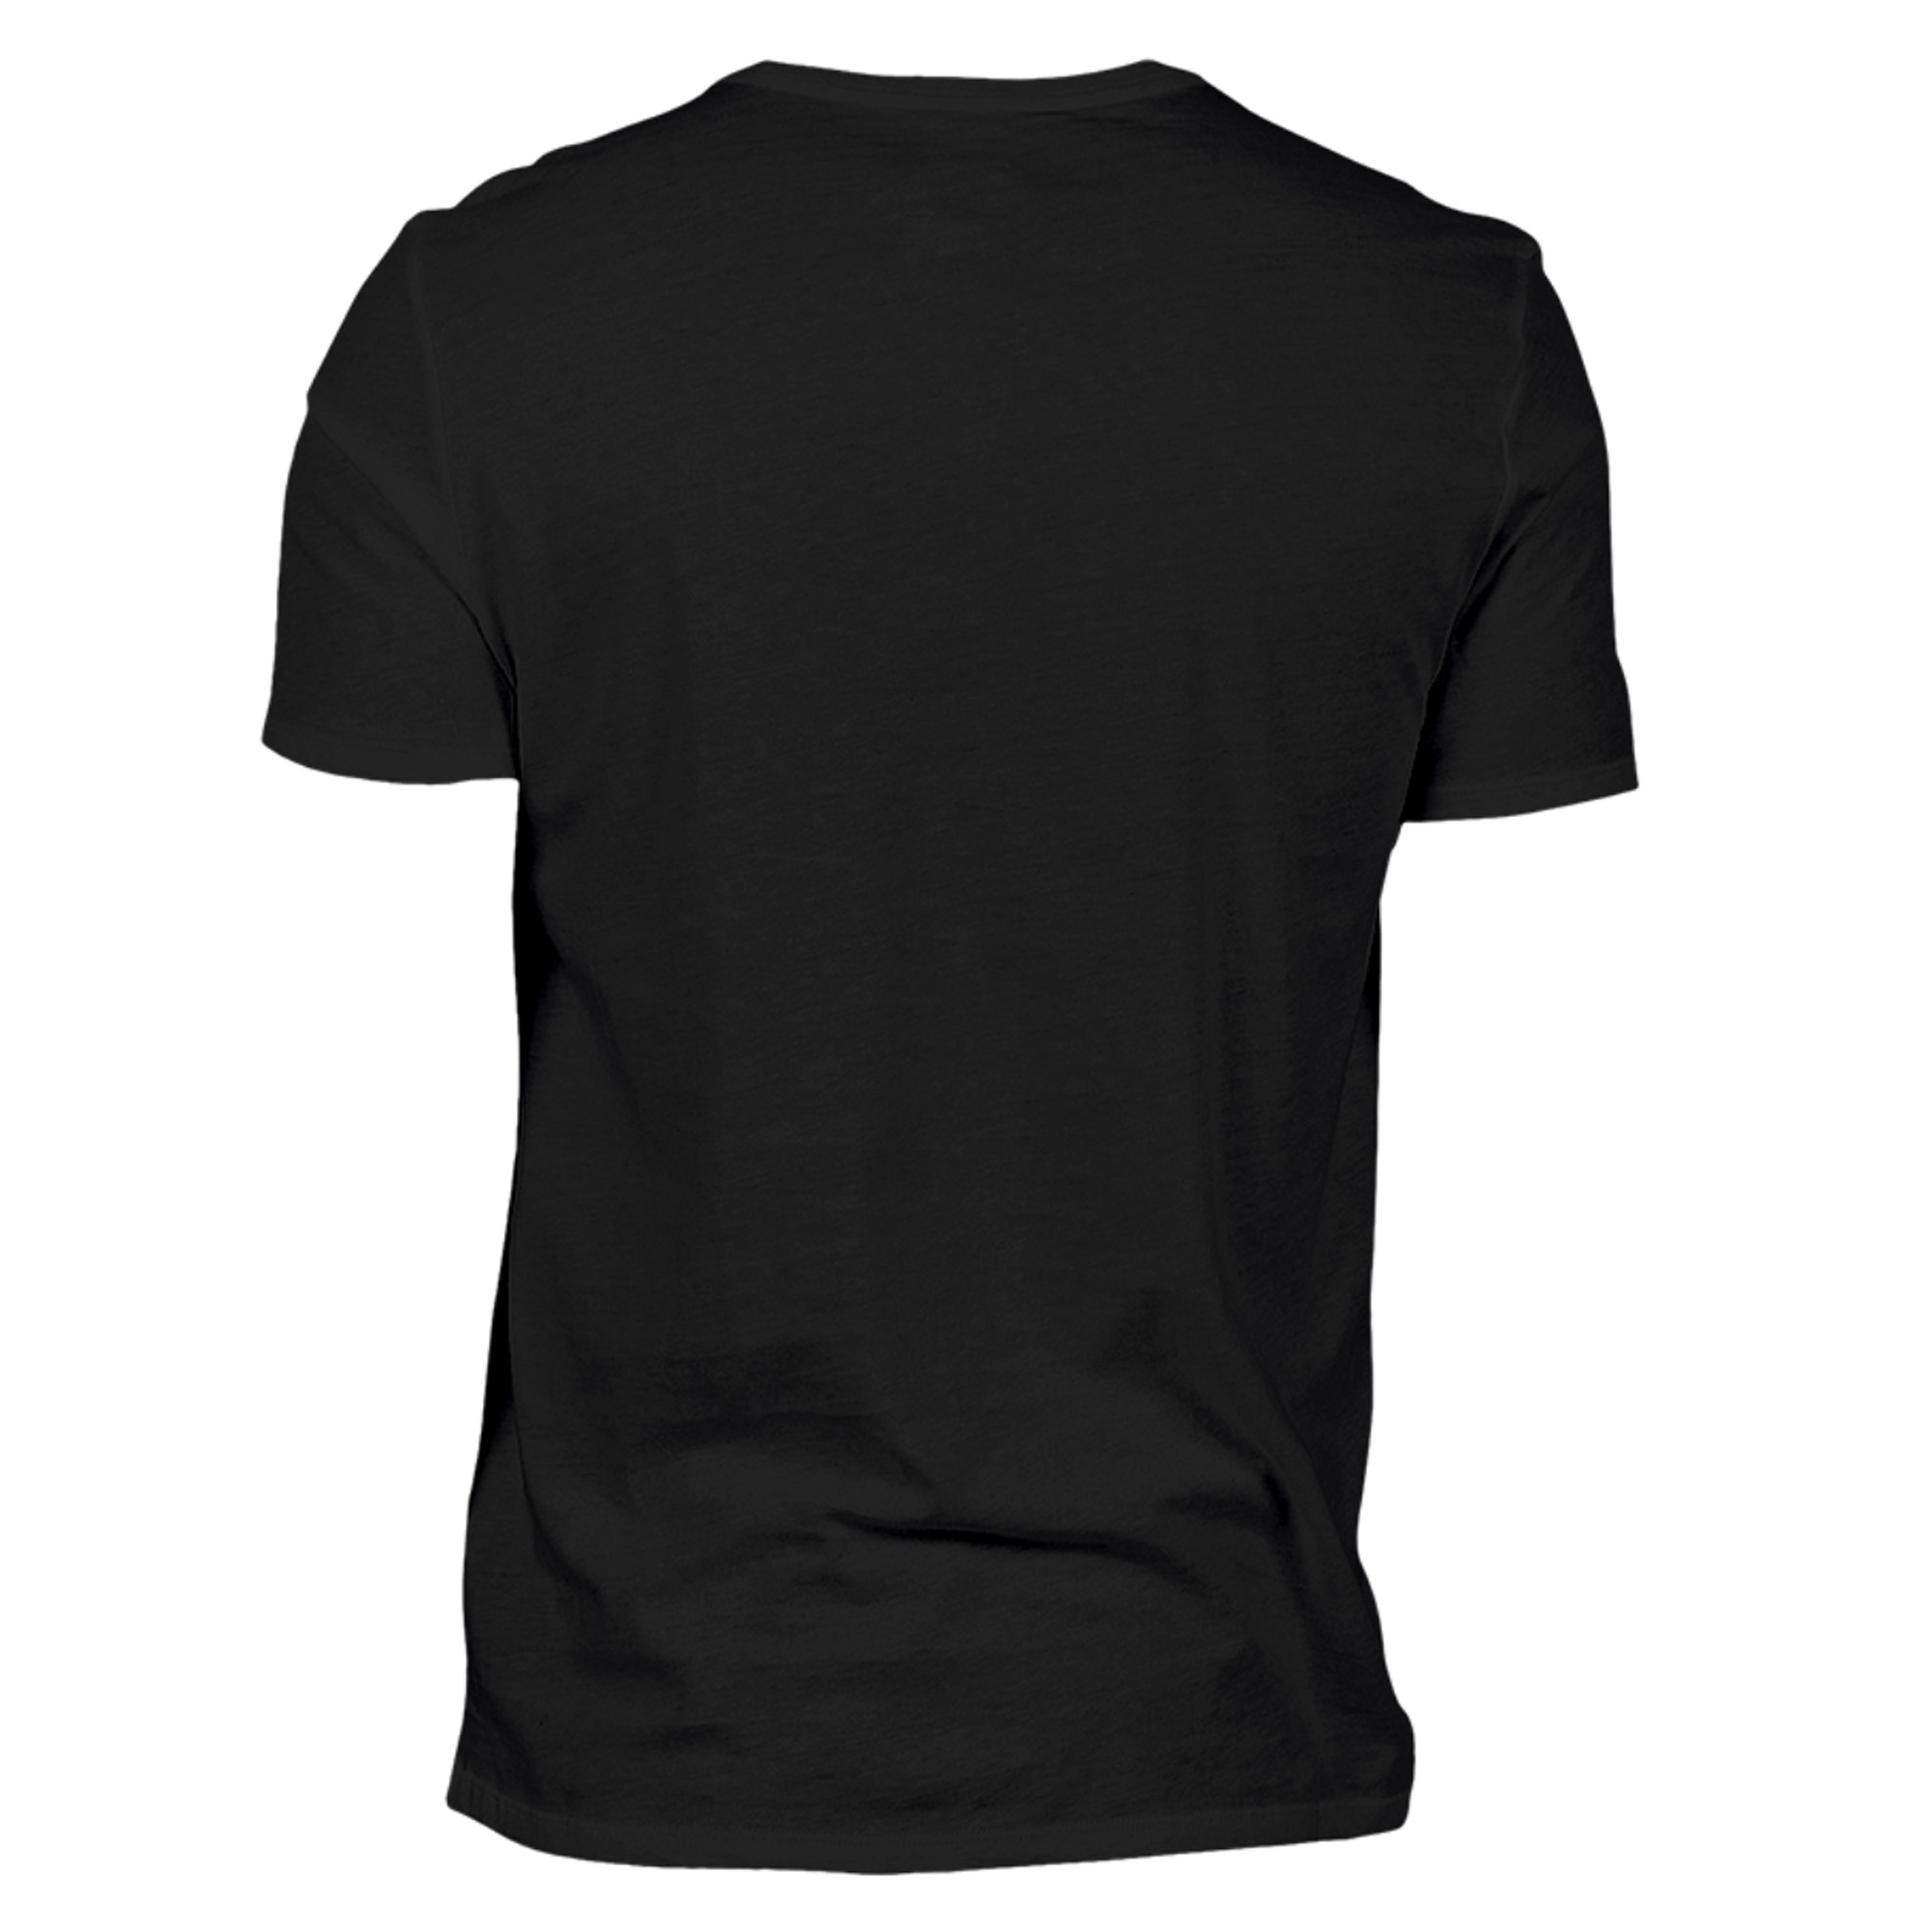 Rochau T-Shirt »I love«